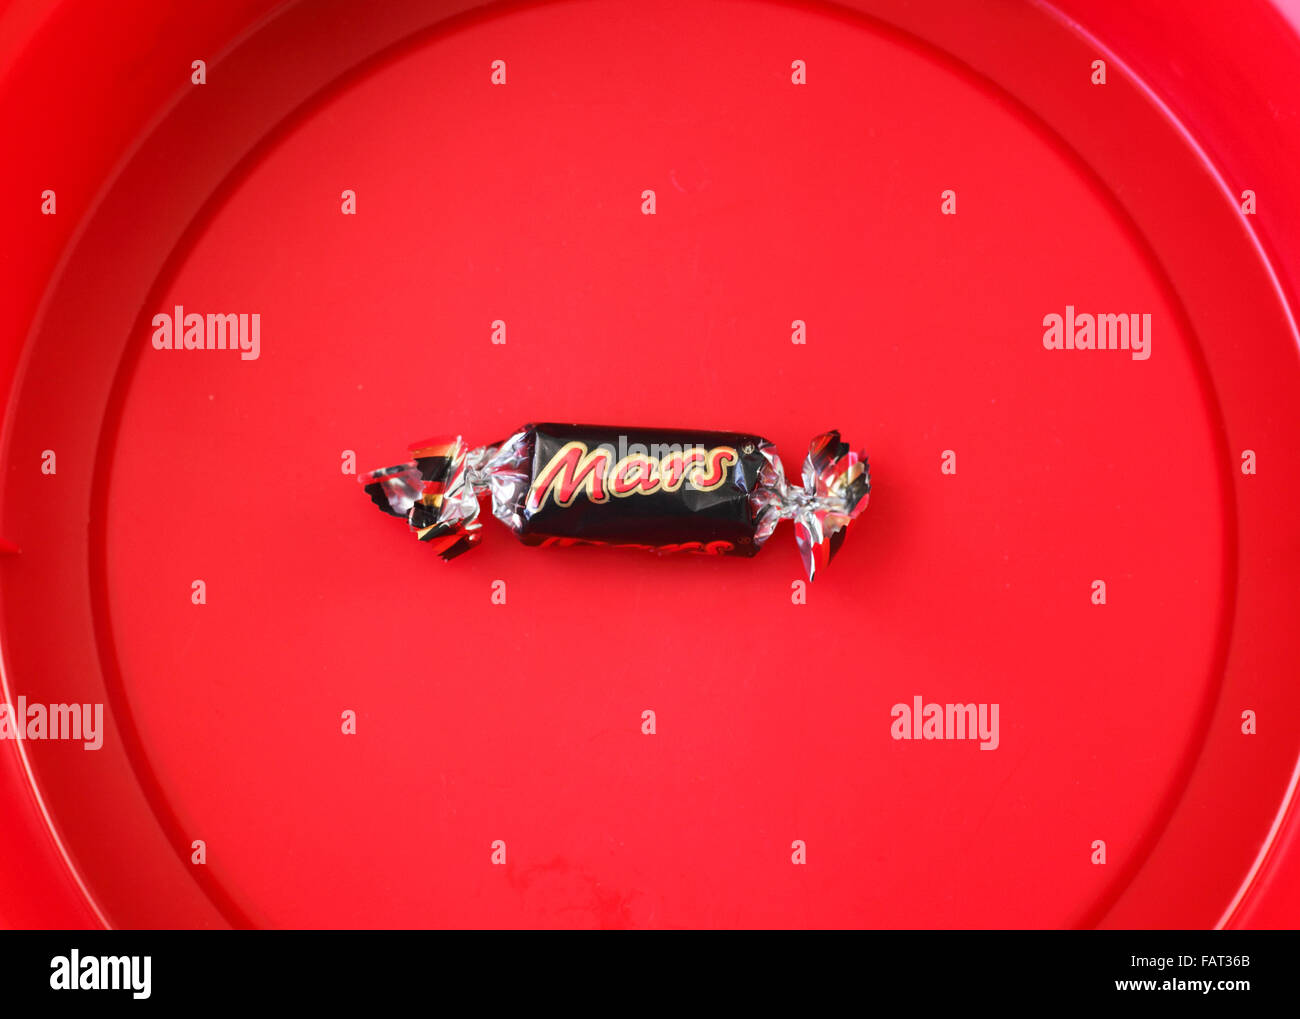 Marte divertido bar de tamaño en la parte inferior izquierda de una tina de chocolates. Foto de stock